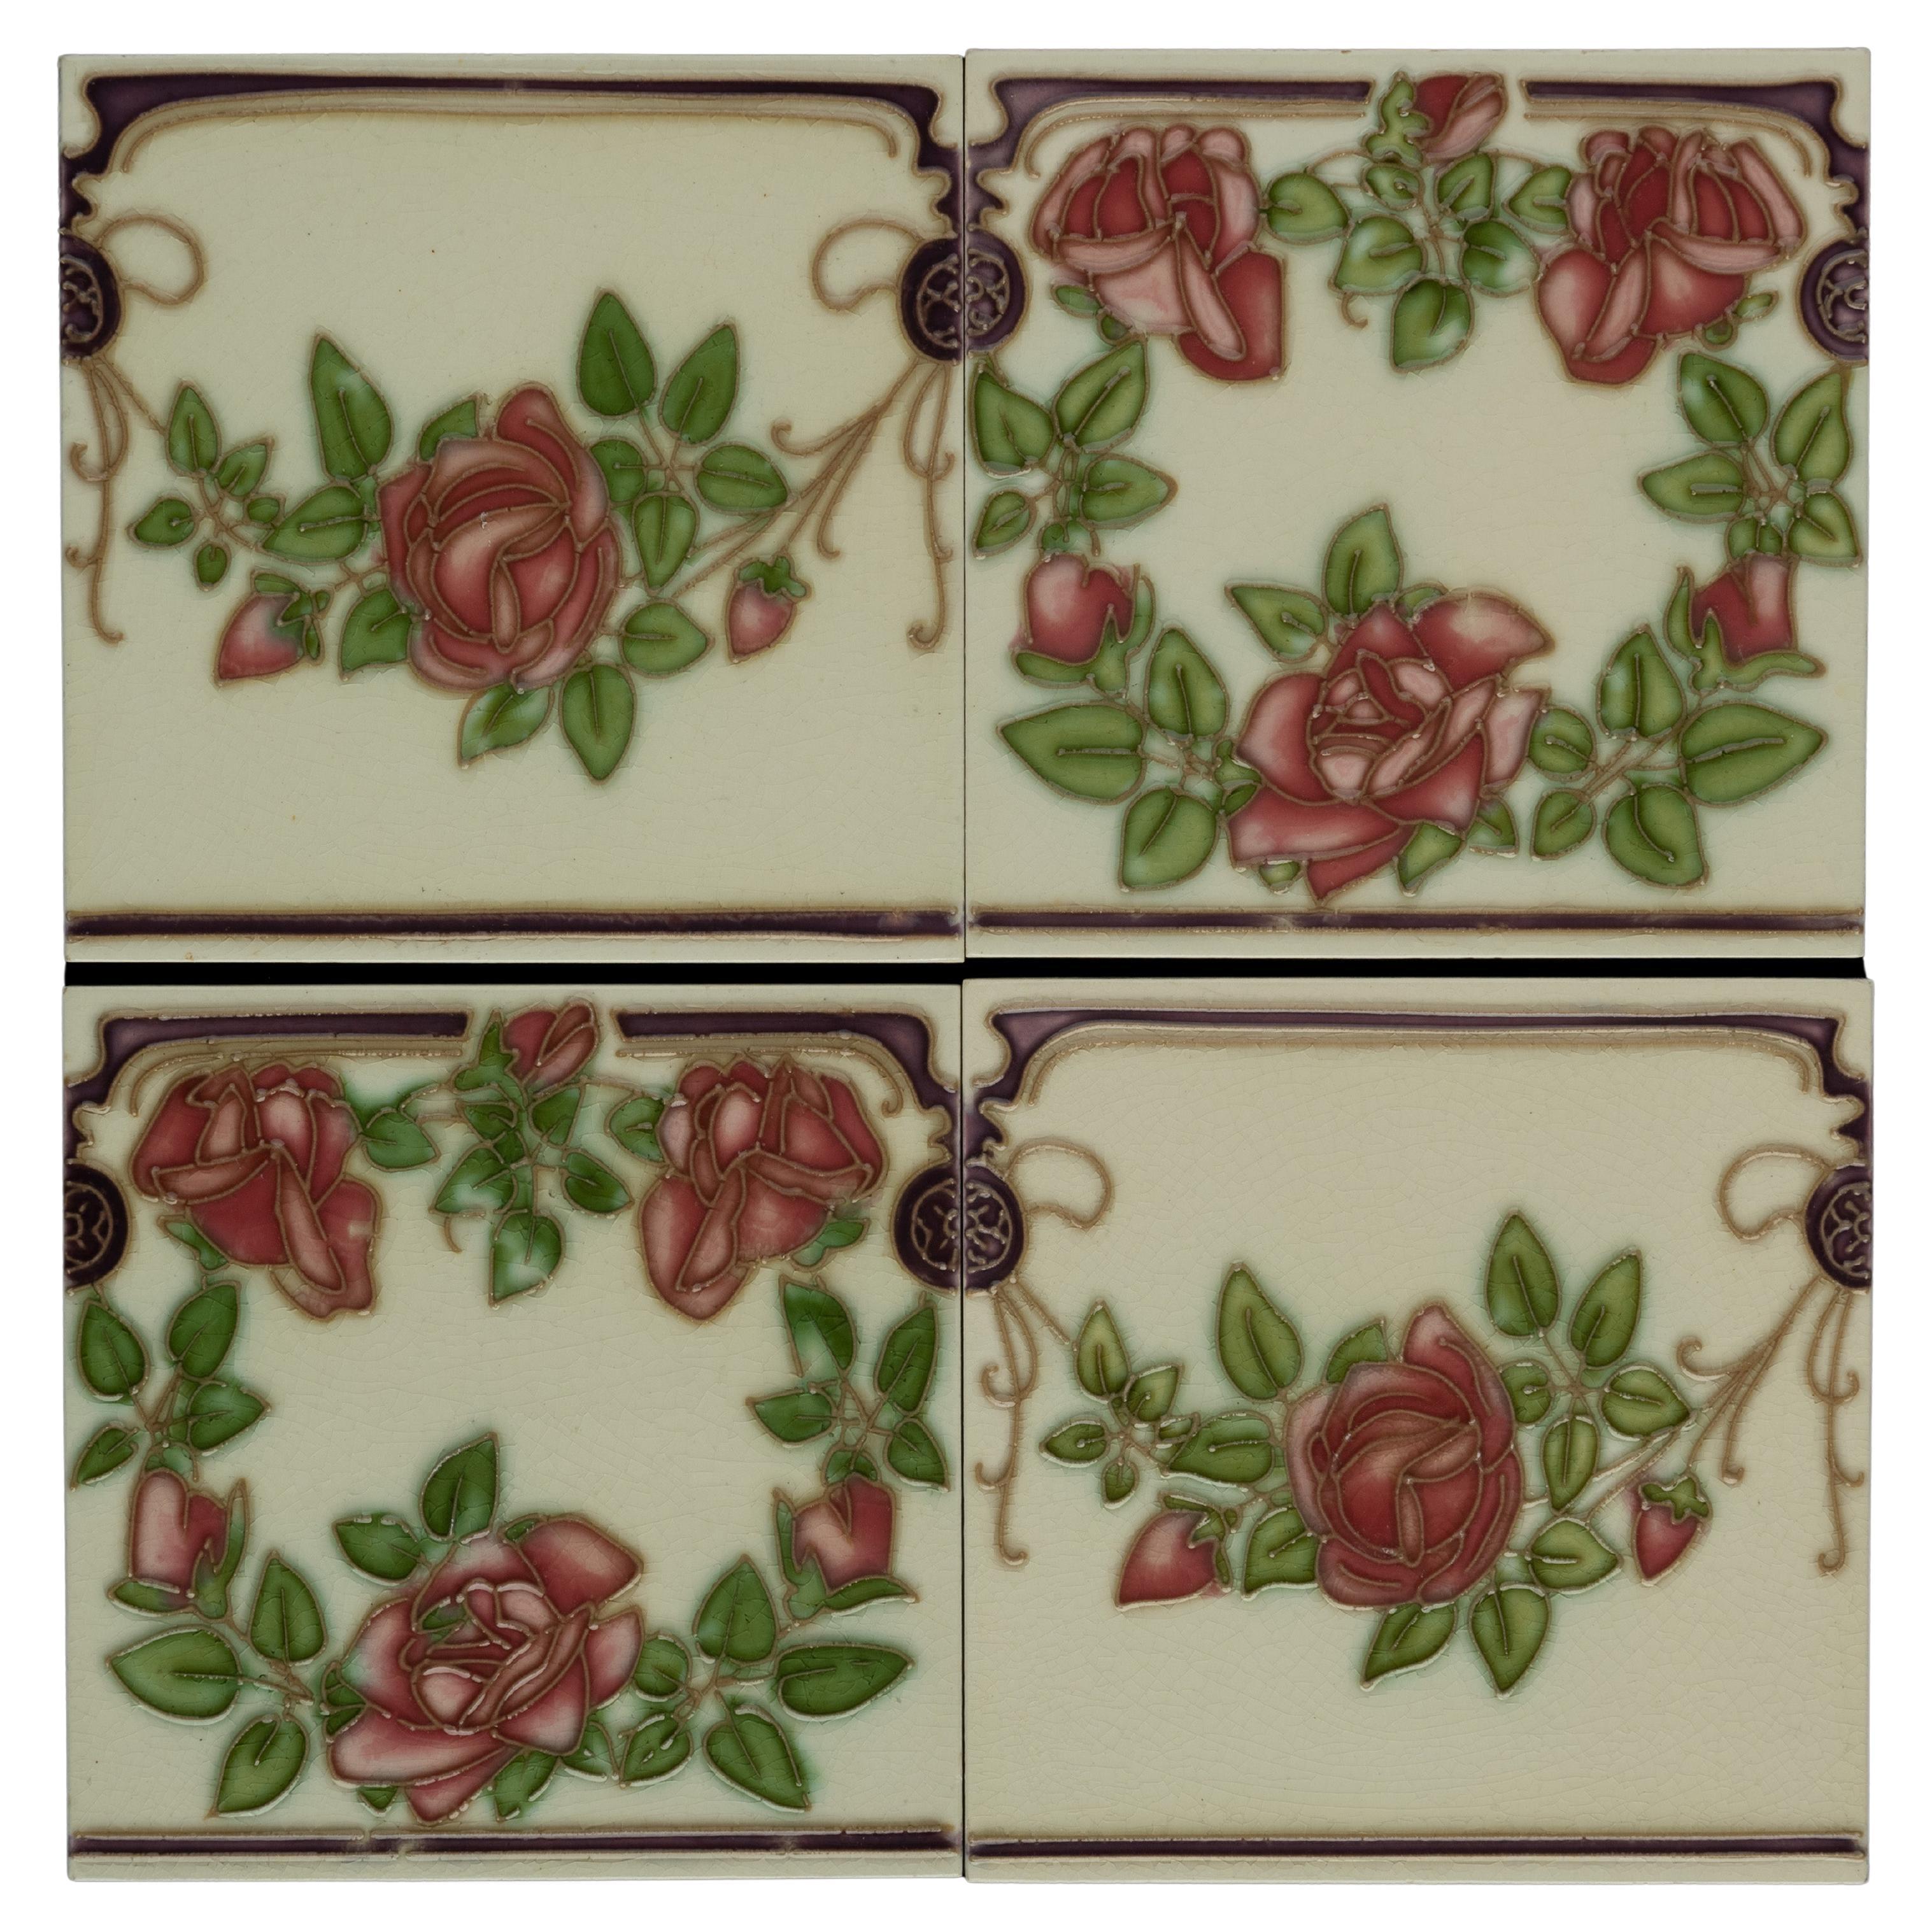 Il s'agit d'un lot spécial de 45 carreaux Art Nouveau représentant un décor continu avec des roses. Le décor est appliqué selon la technique du tubage. 

L'argile glissante est  placé dans une poire à pression munie d'une fine buse. En pressant